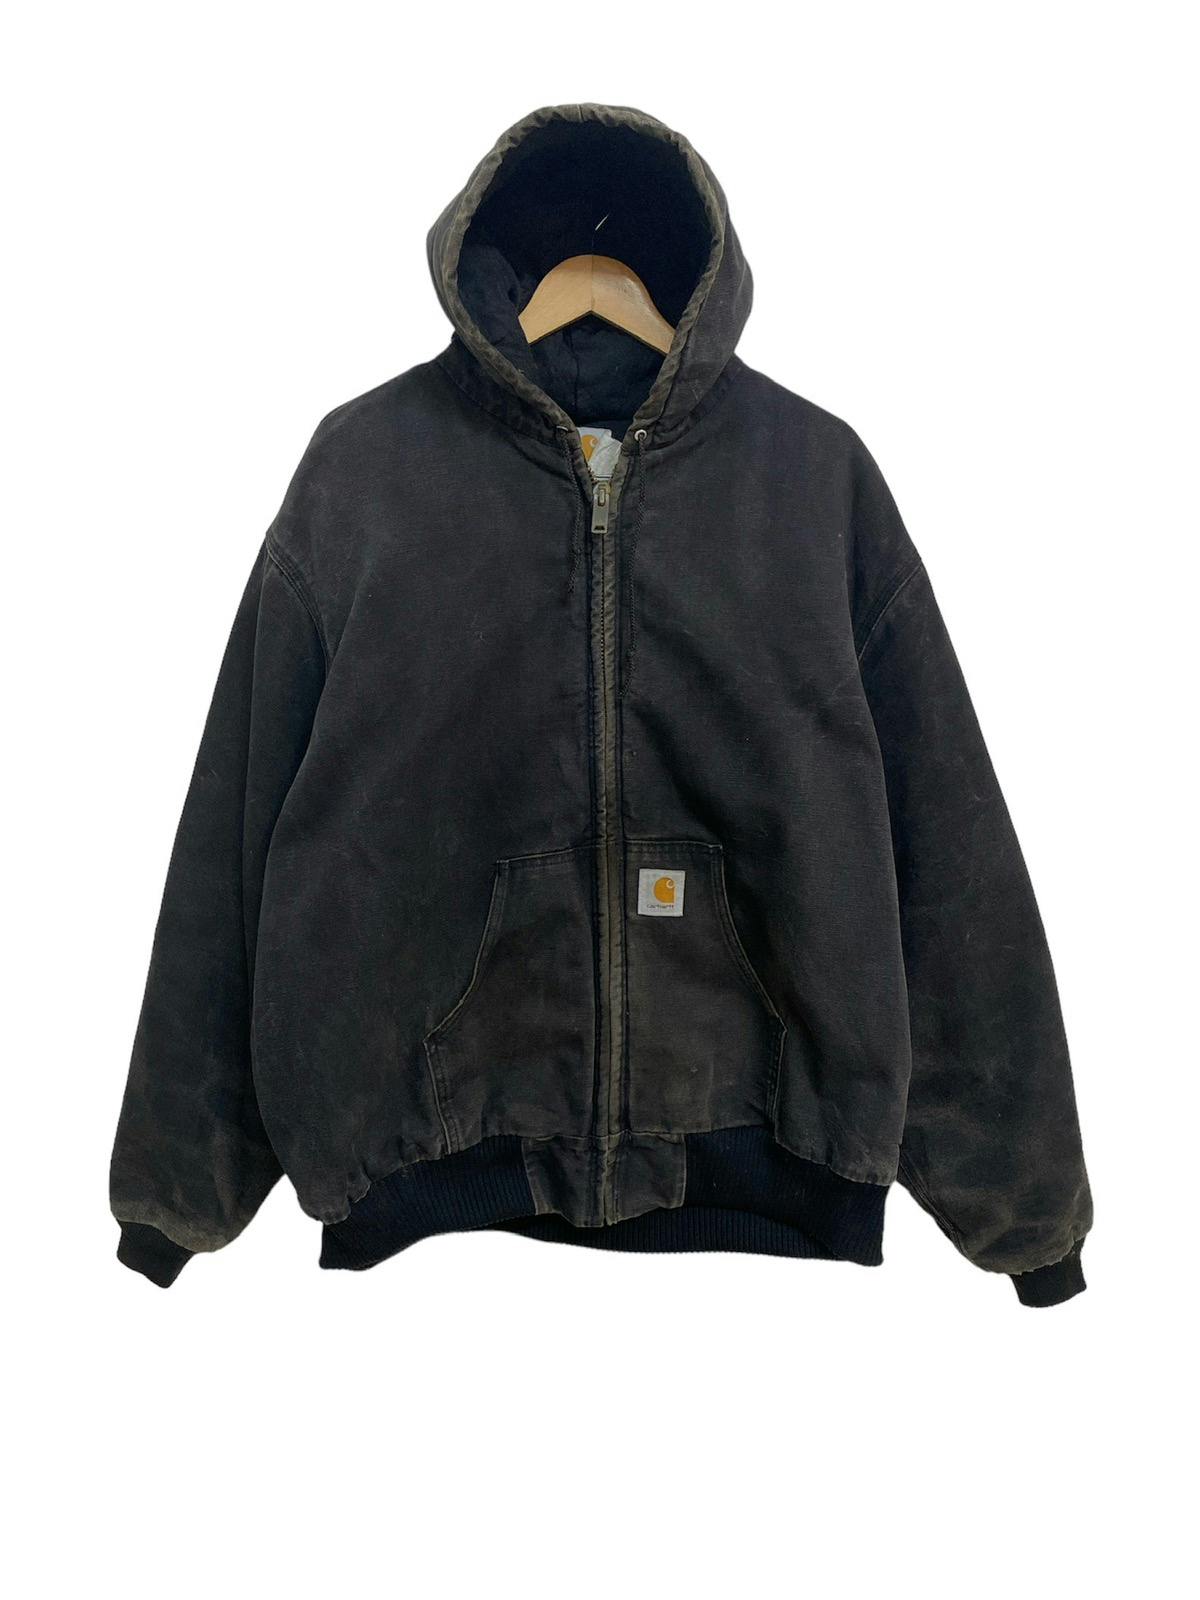 Vintage 90s Carhartt Workwear Hoodie Jacket - 2